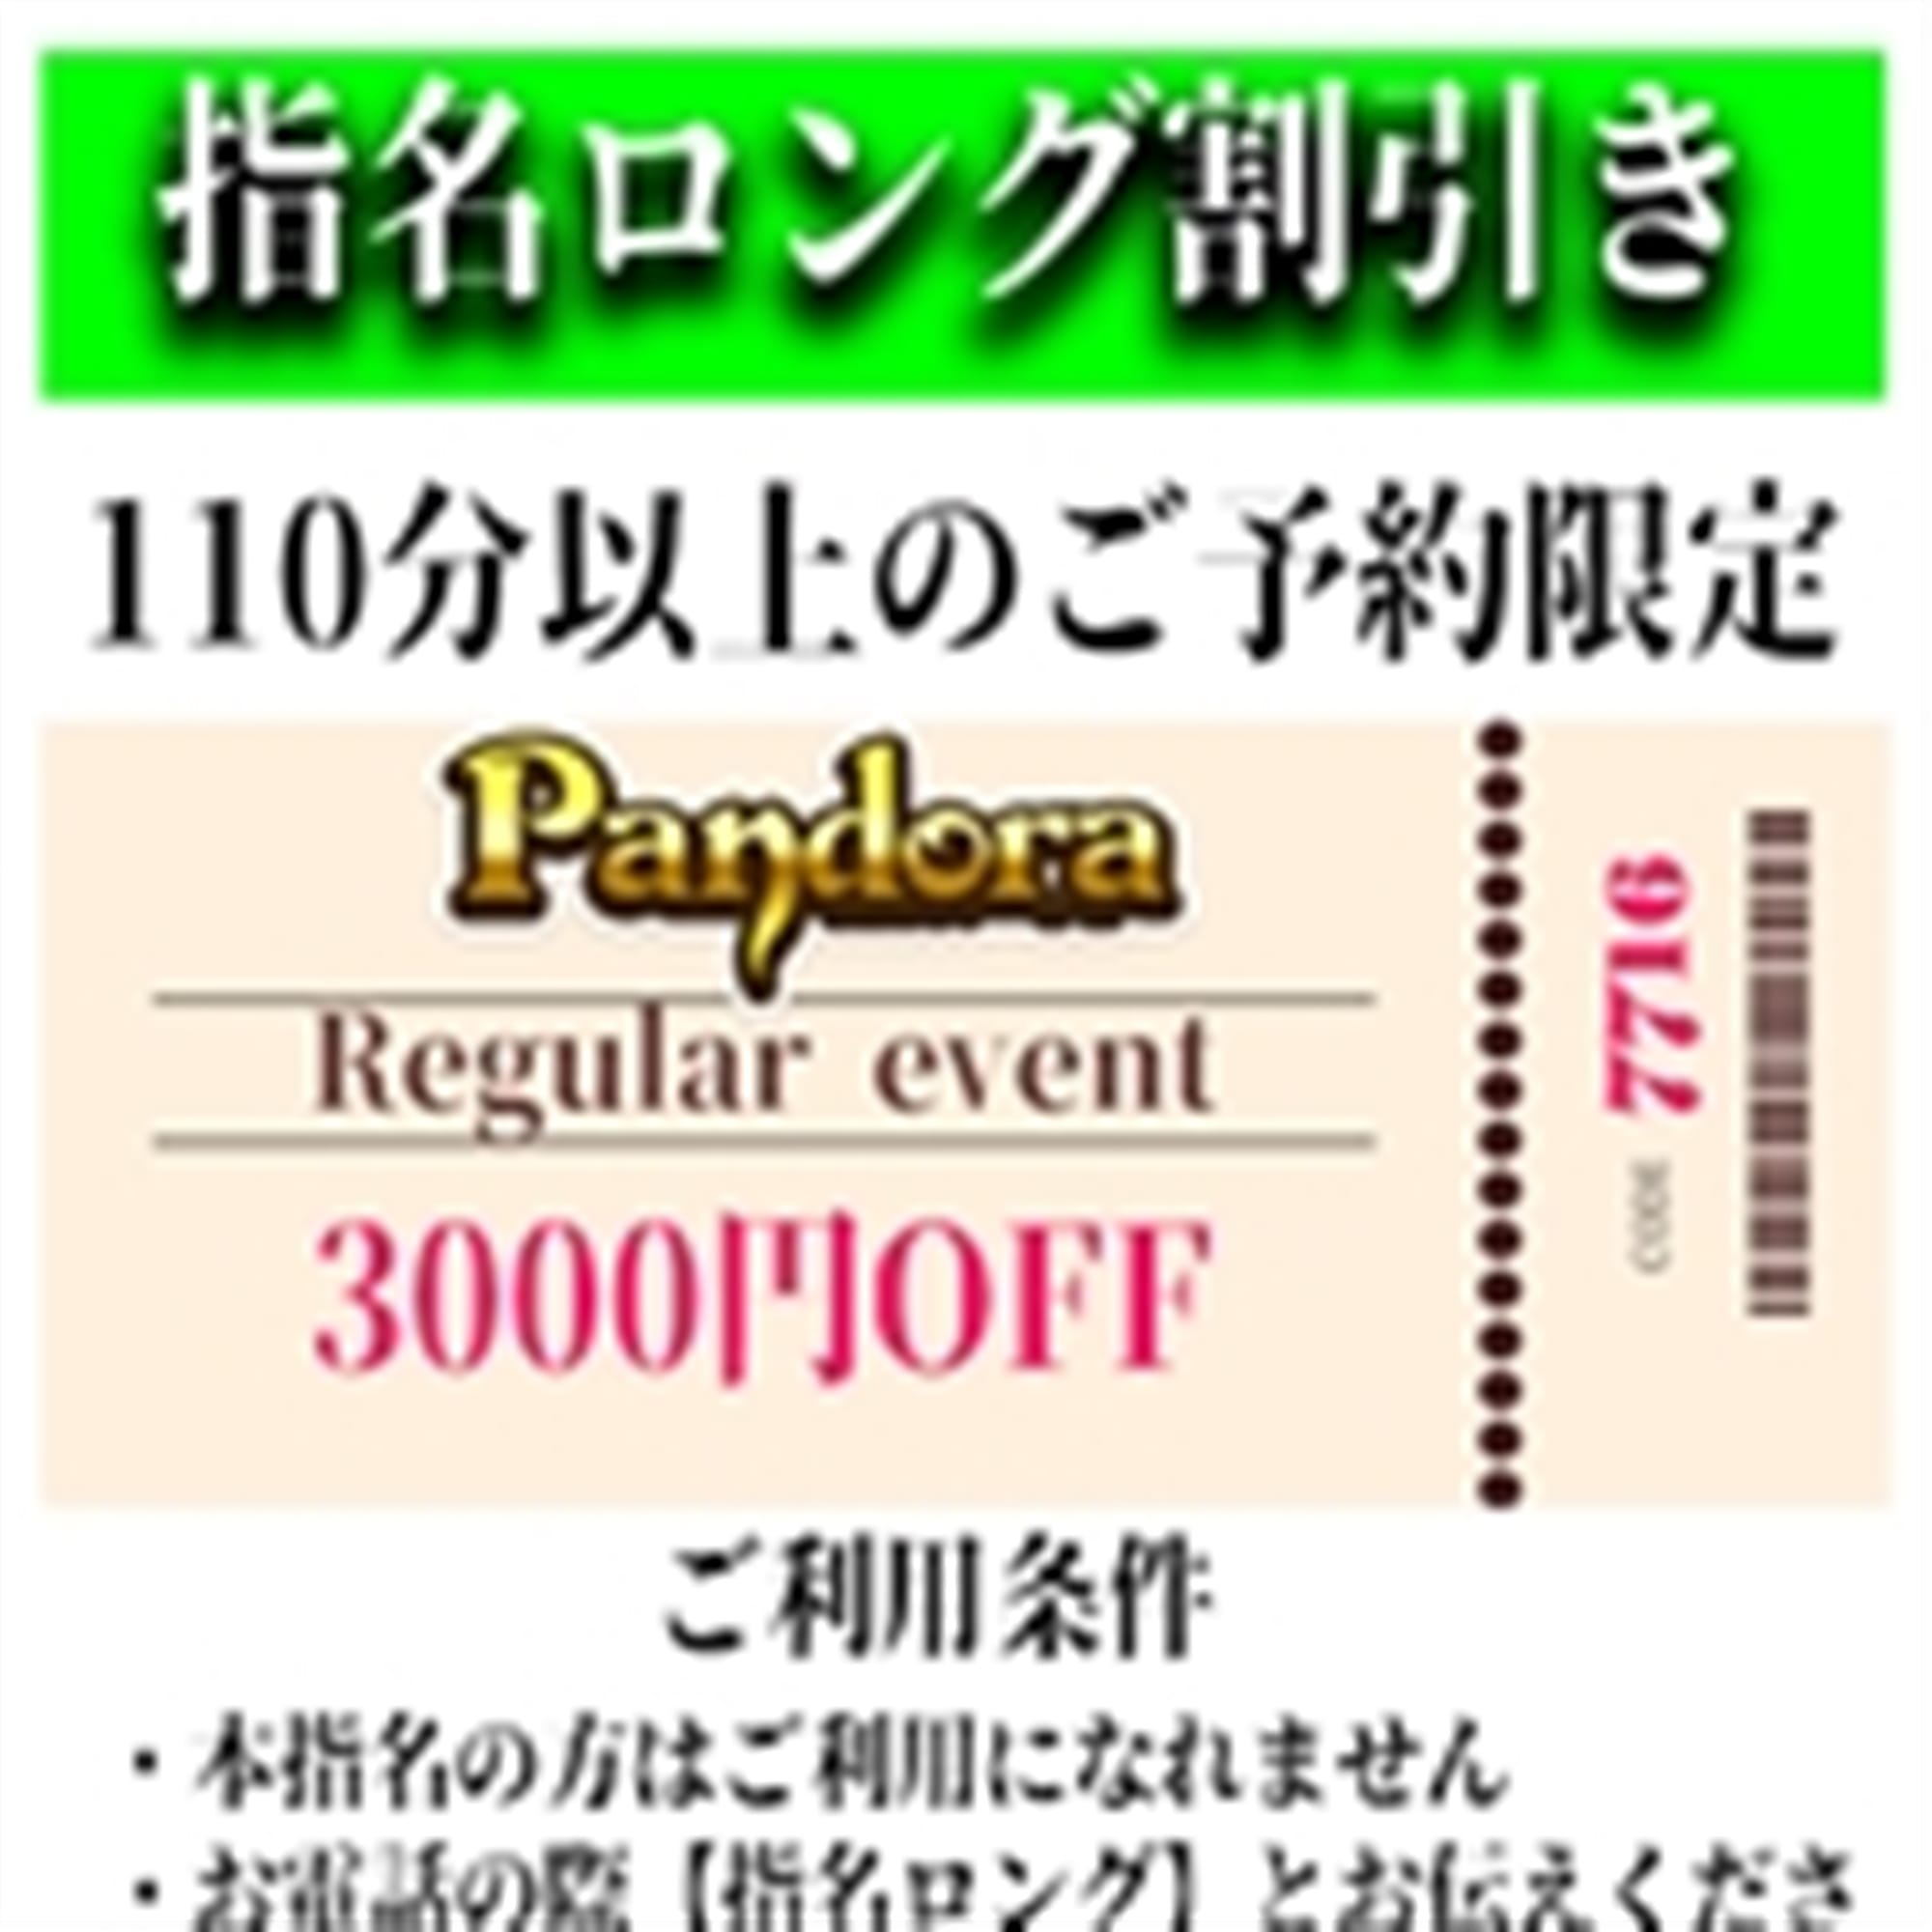 「ご指名のお客様も遊べるロングコース割引」04/26(金) 12:10 | Pandora(パンドラ)新潟のお得なニュース